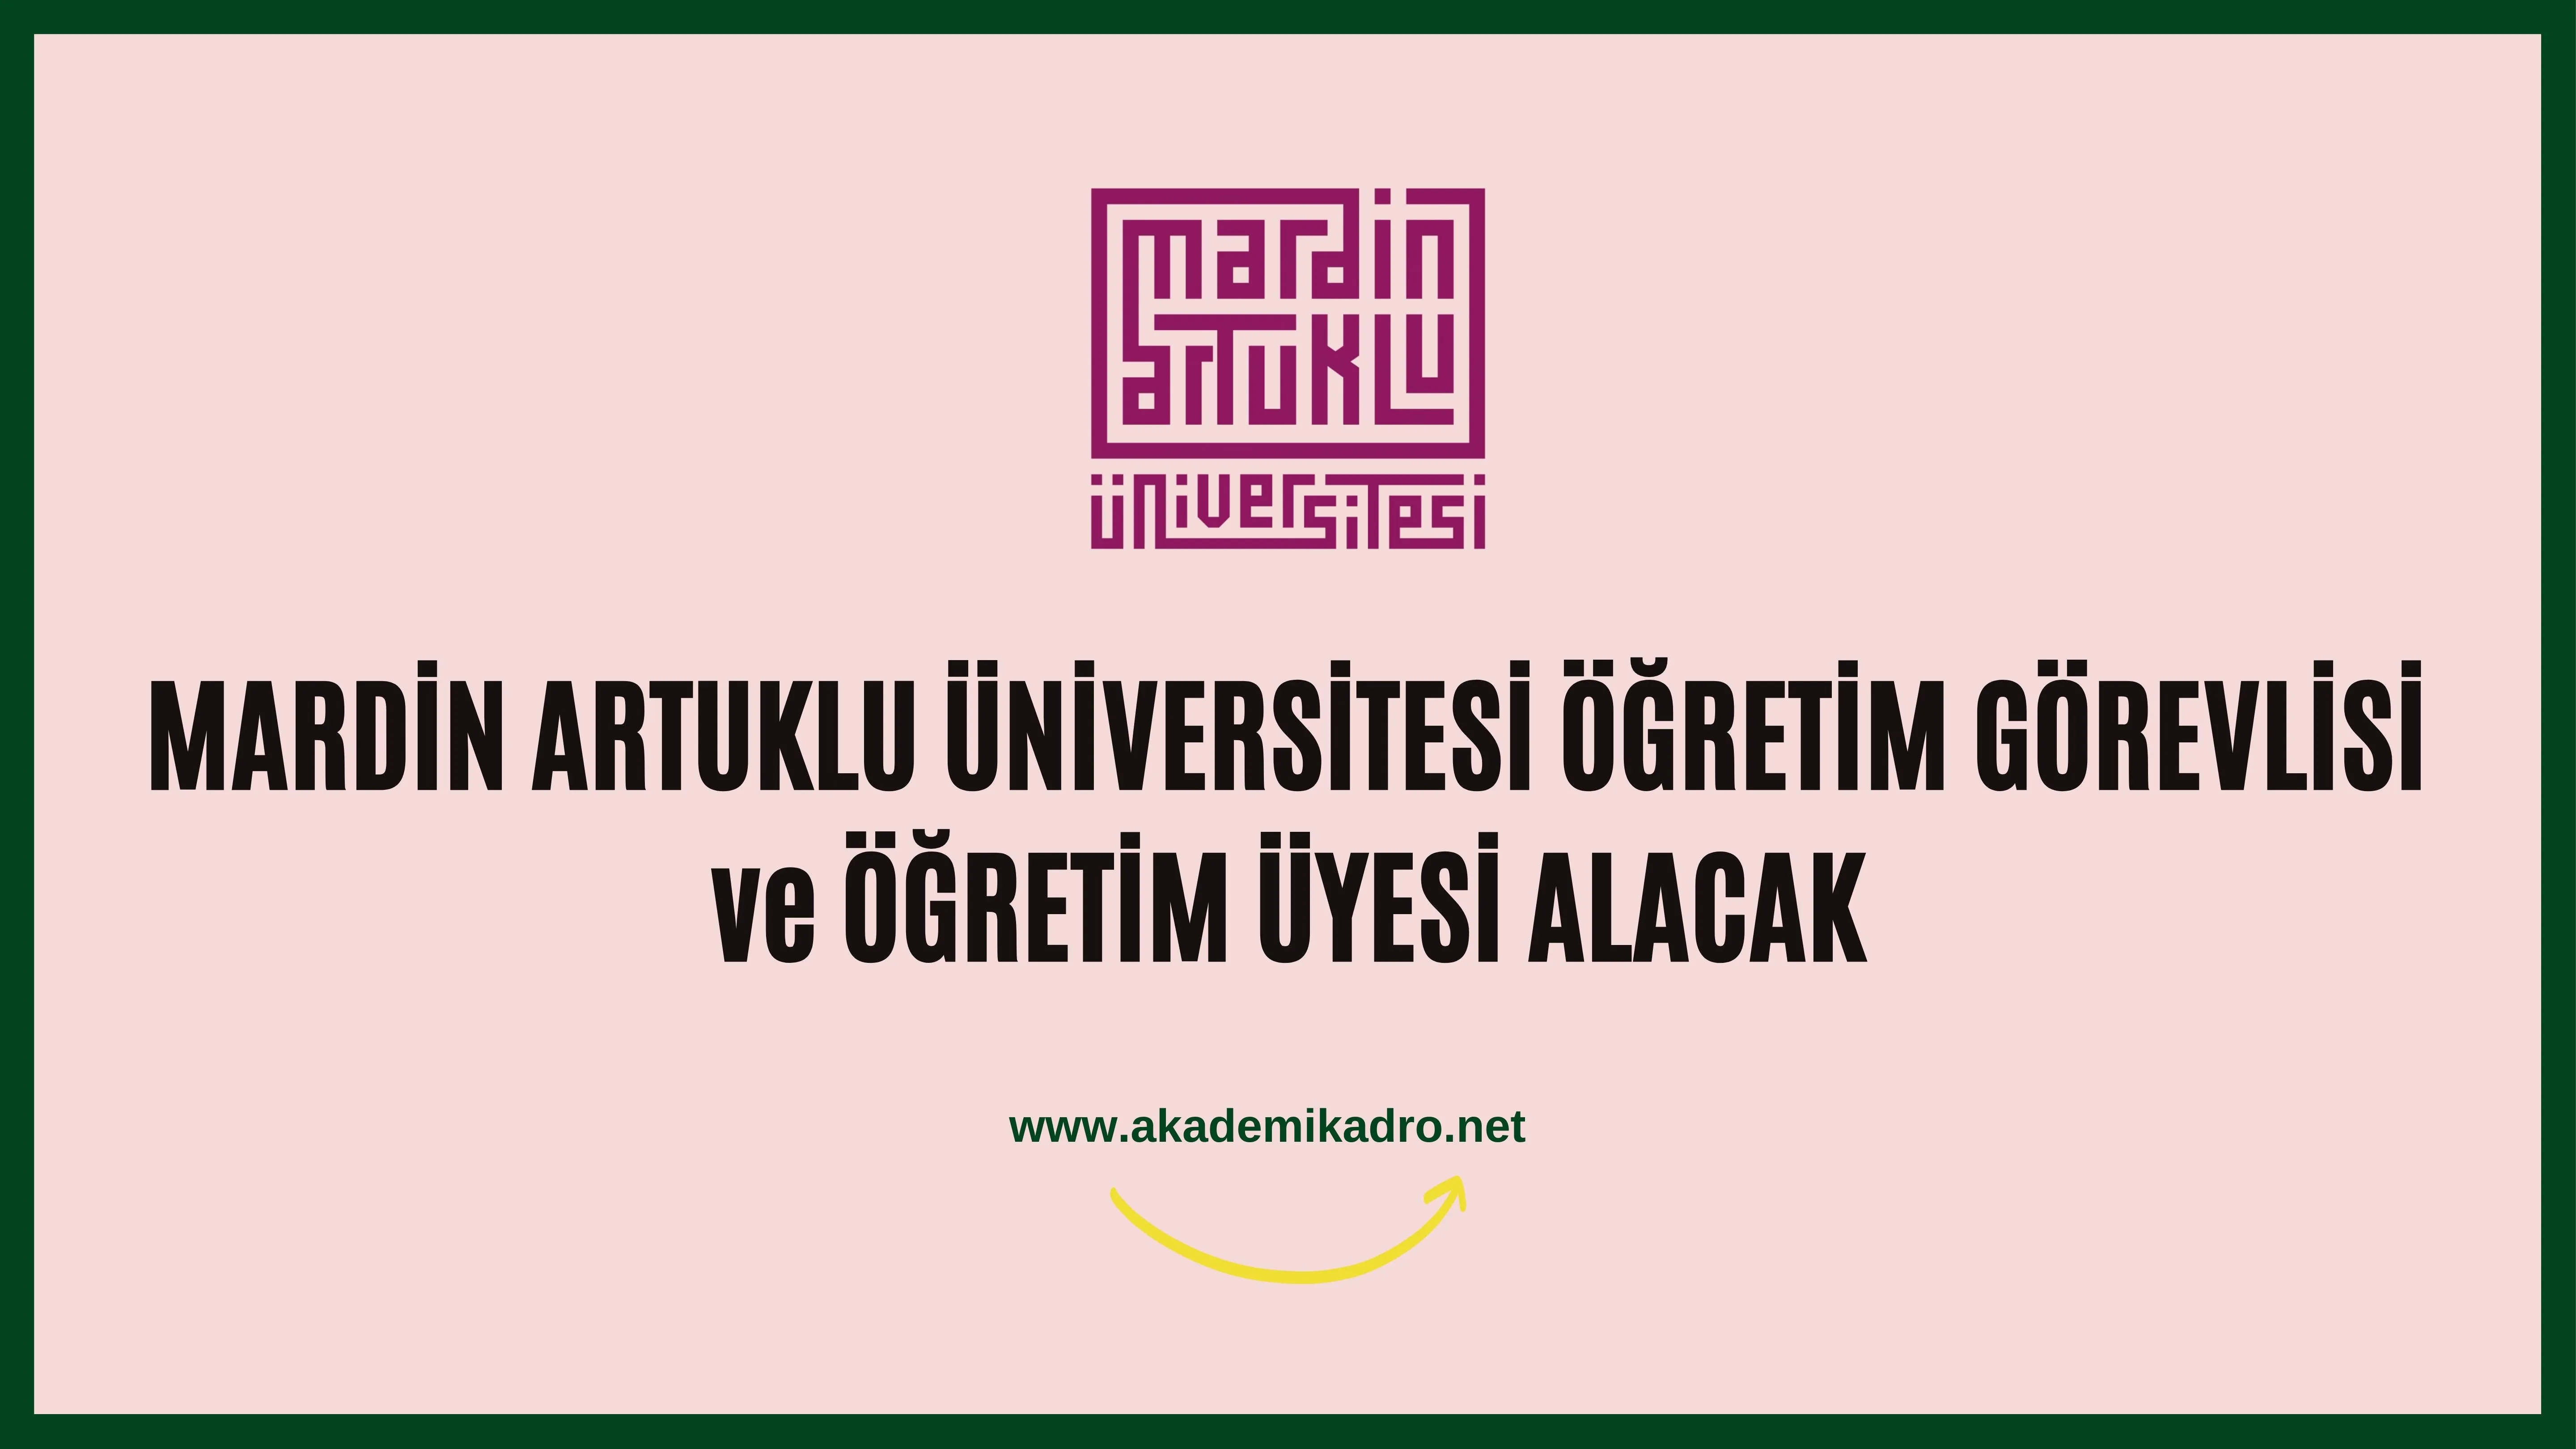 Mardin Artuklu Üniversitesi Öğretim görevllisi ve Öğretim üyesi alacak.